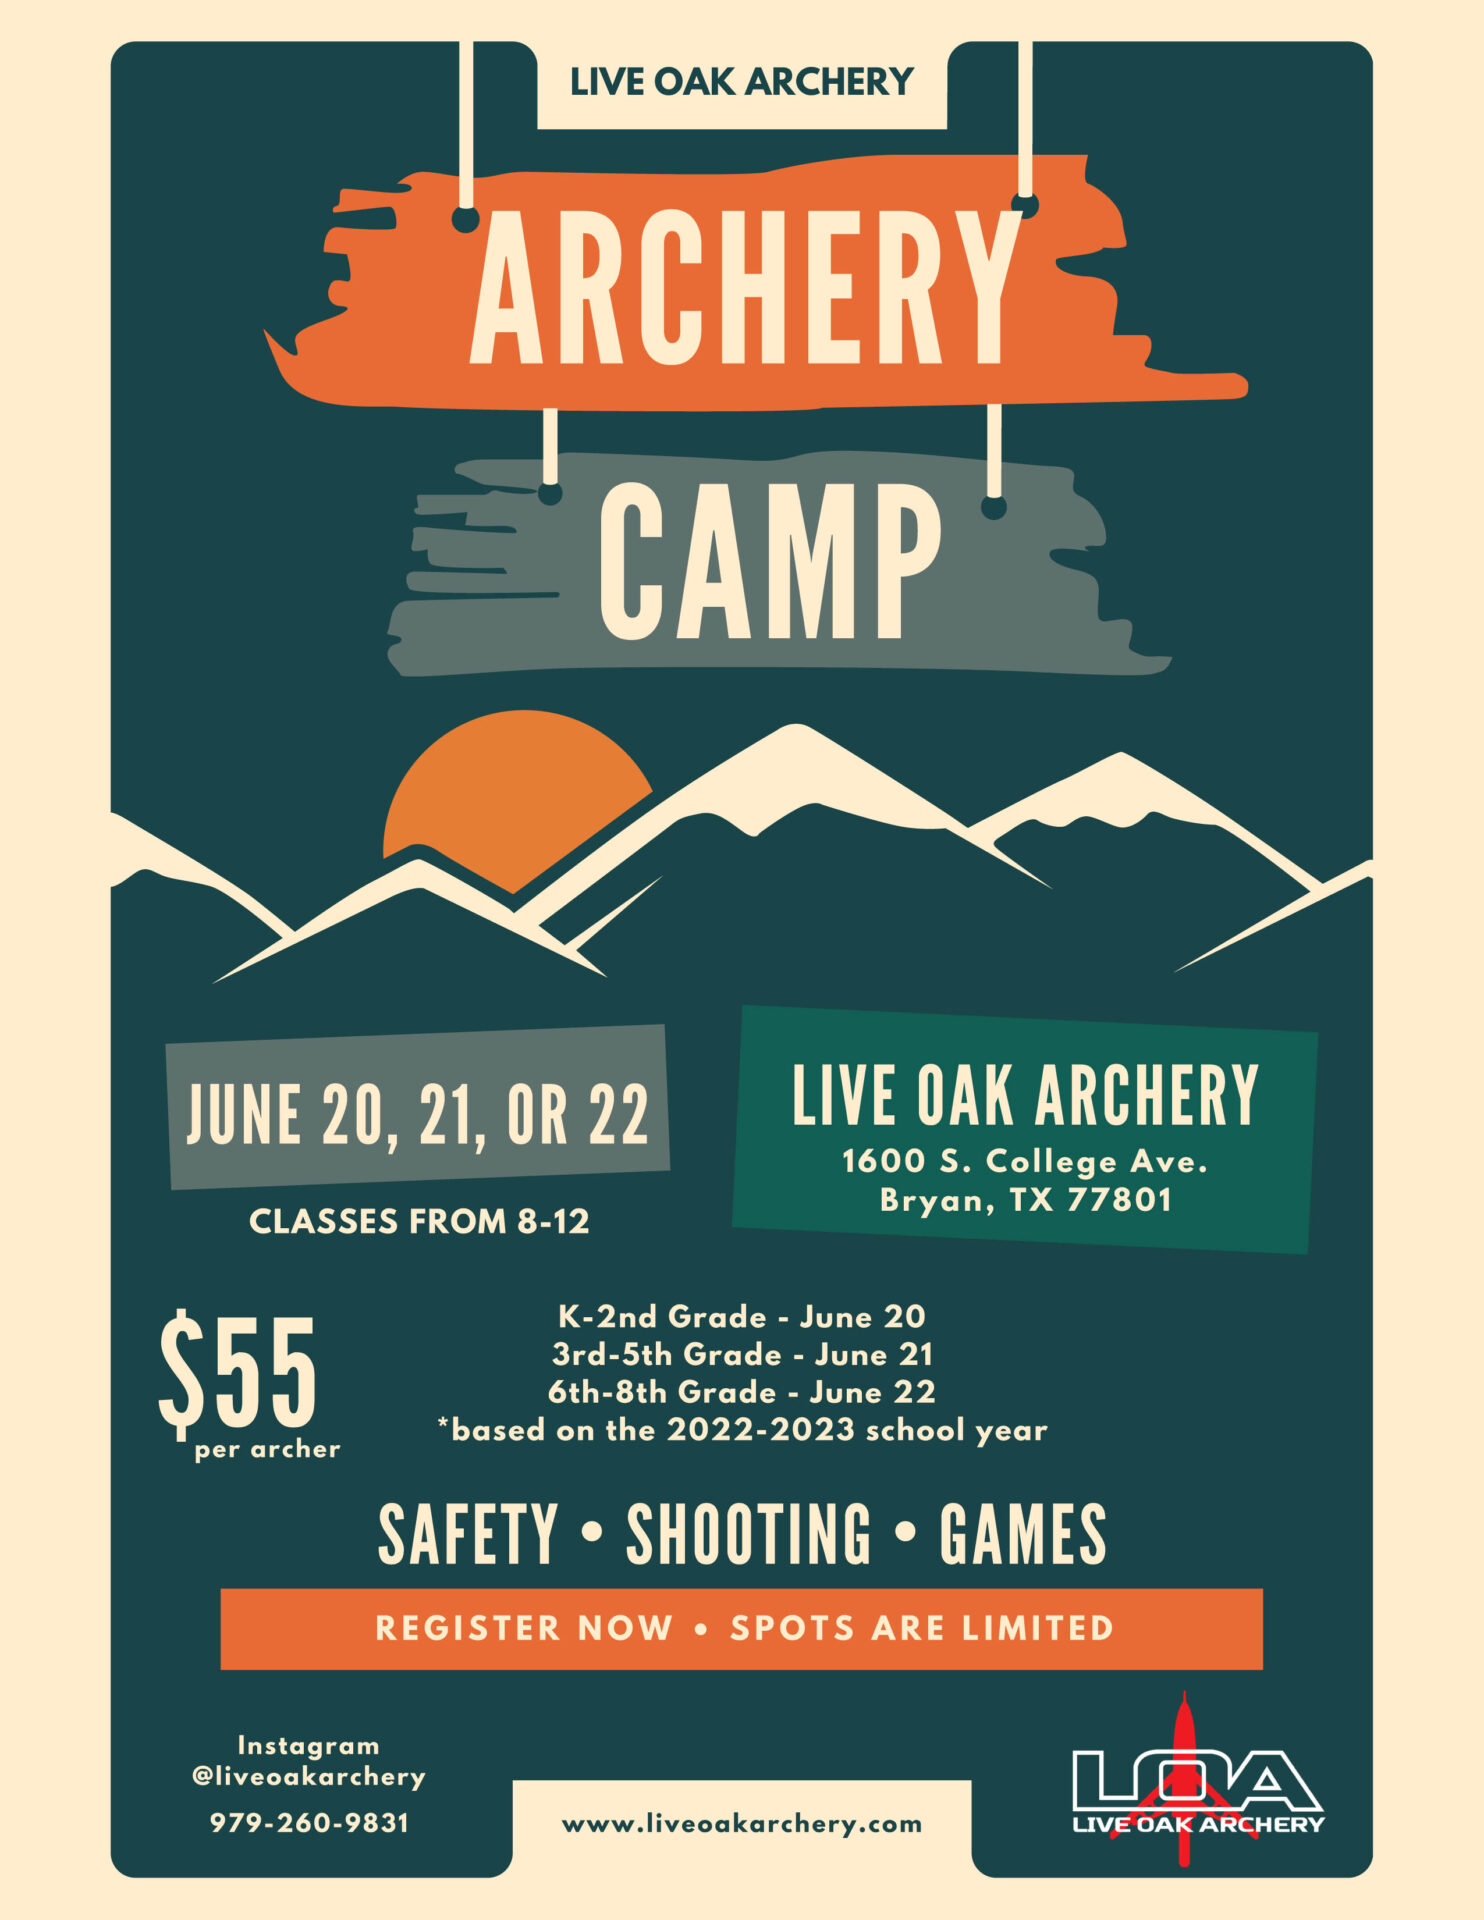 Live Oak Archery Summer Camp Live Oak Archery